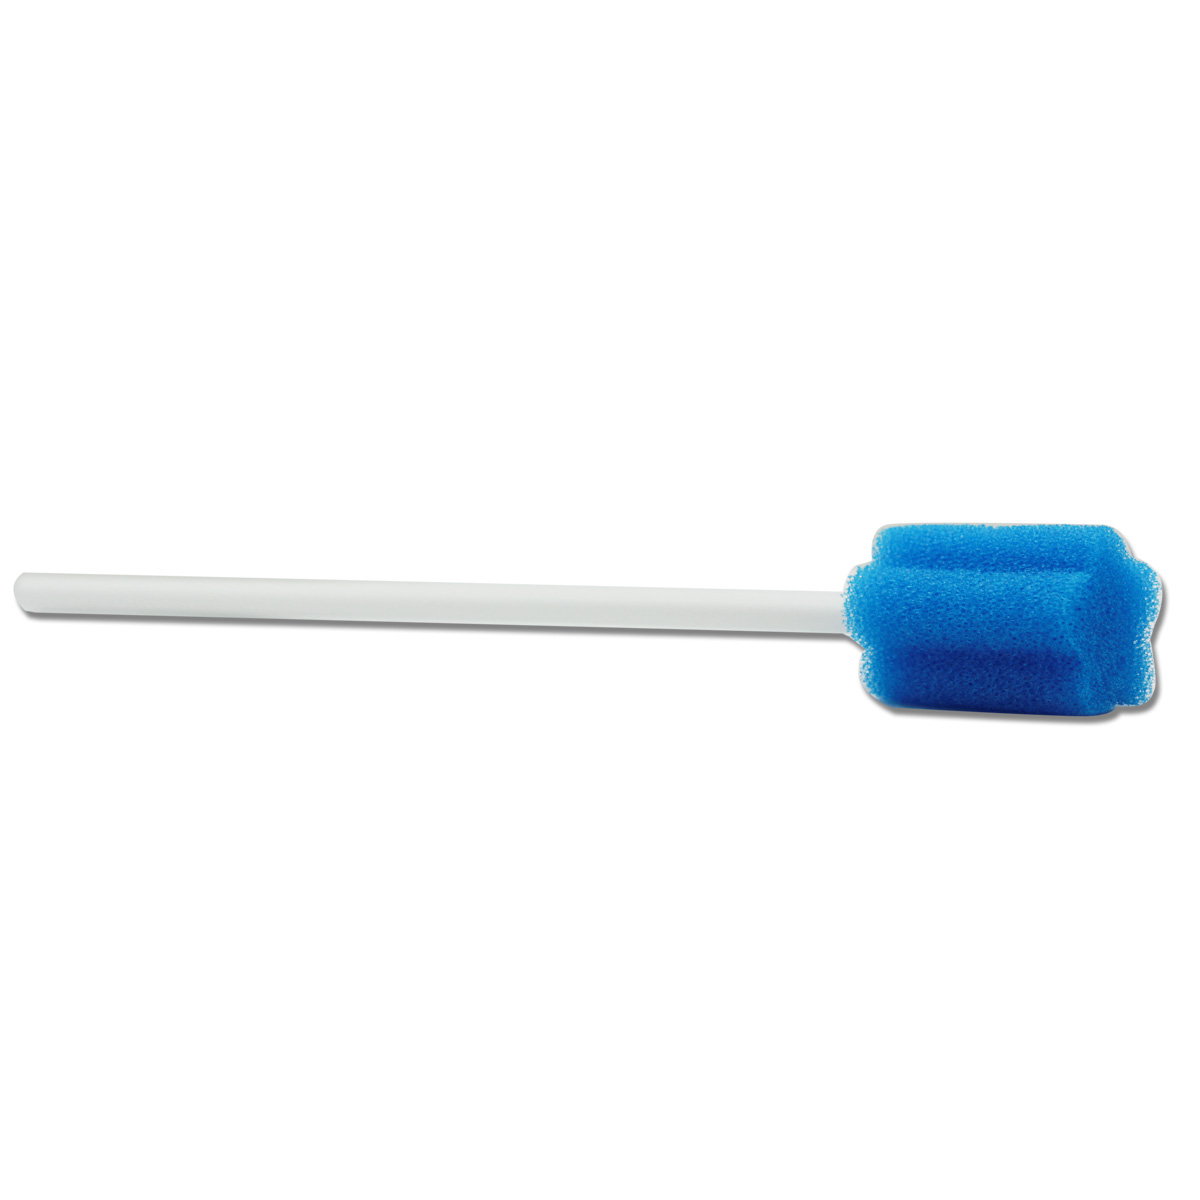 Engangs Behandlet unflavored Oral Care Sponge podepinde - 15 Tæl individuelt indpakket Swabsticks til mundtlig medicinsk brug